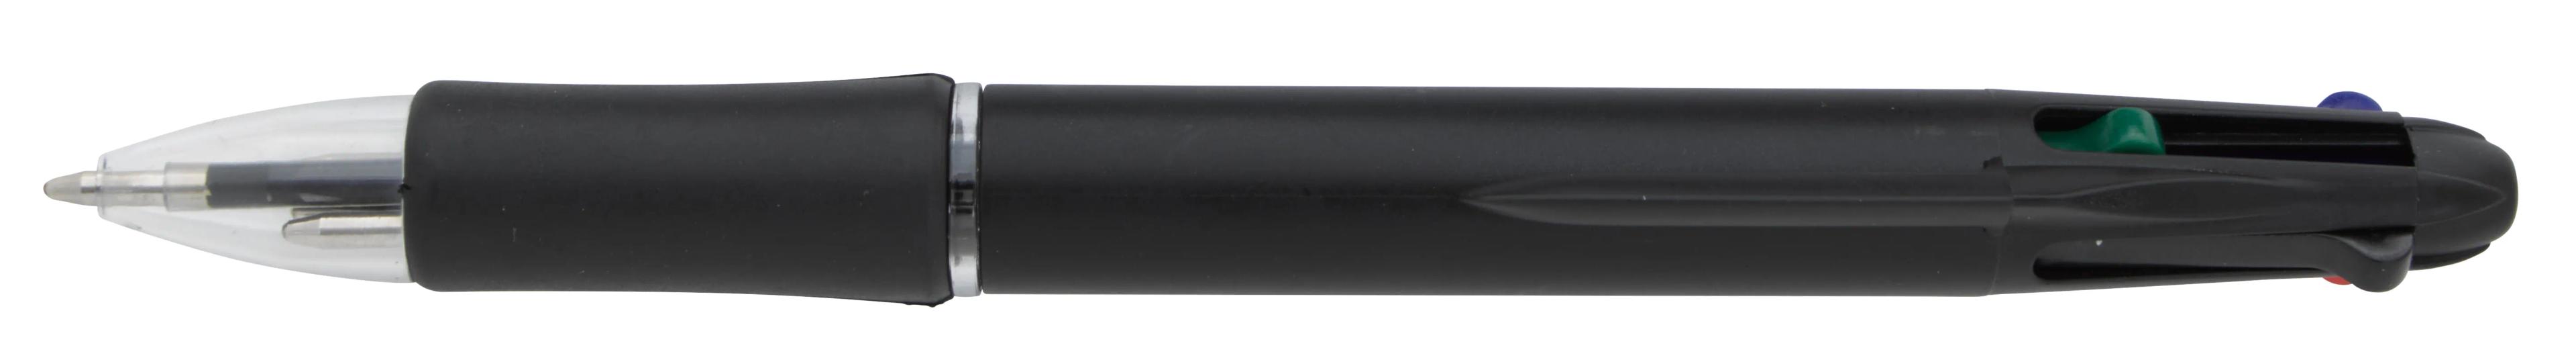 Orbitor Pen 6 of 31